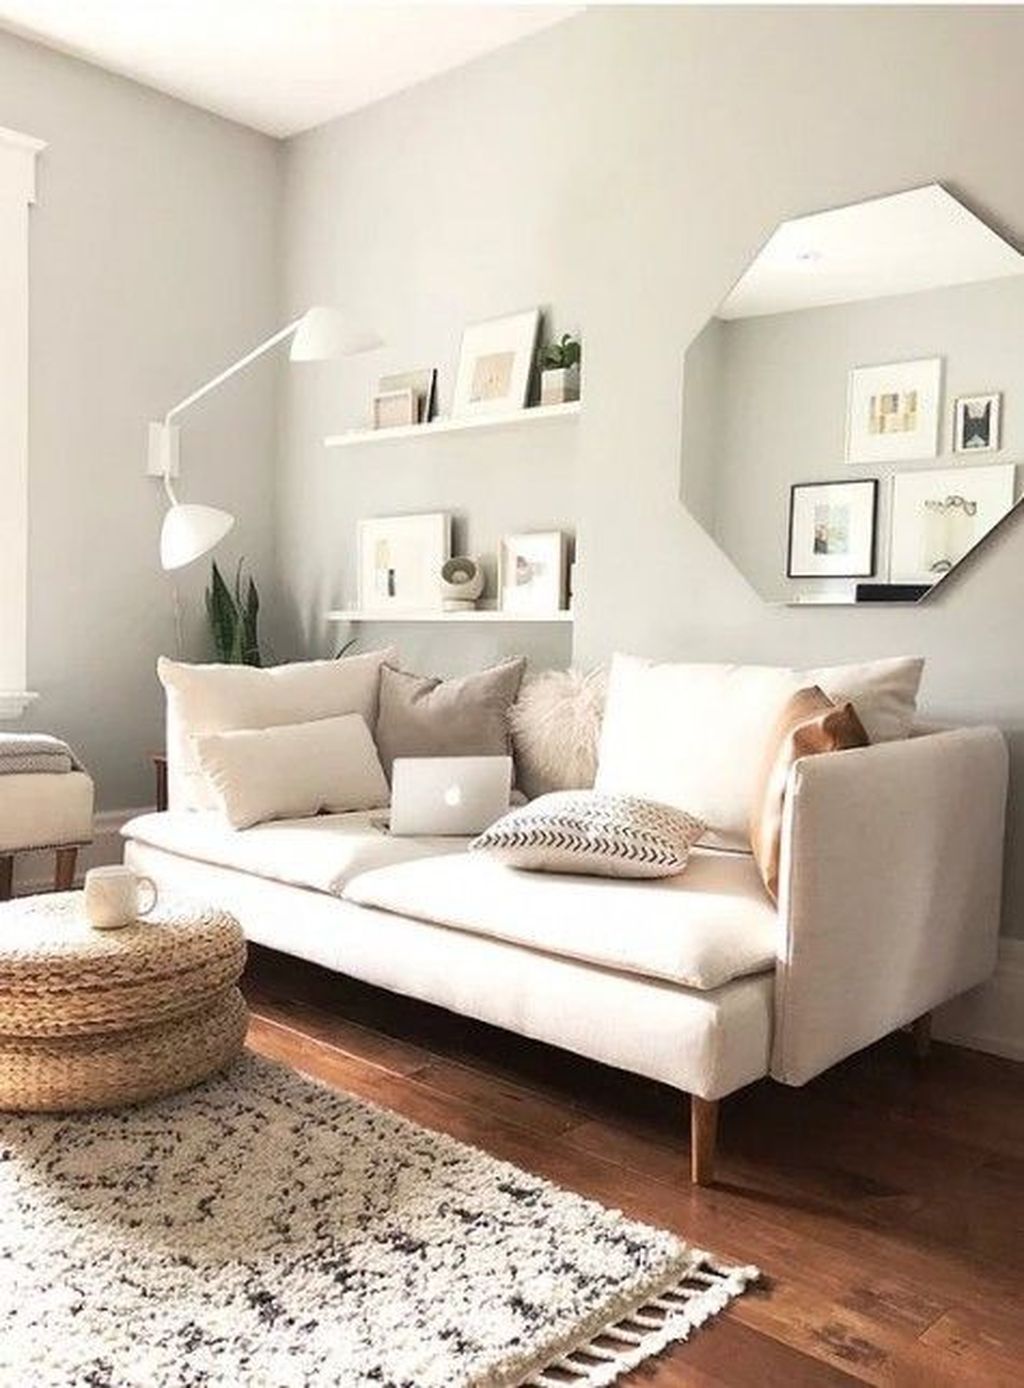 36 Amazing Contemporary Living Room Design Ideas You Should Copy - HMDCRTN